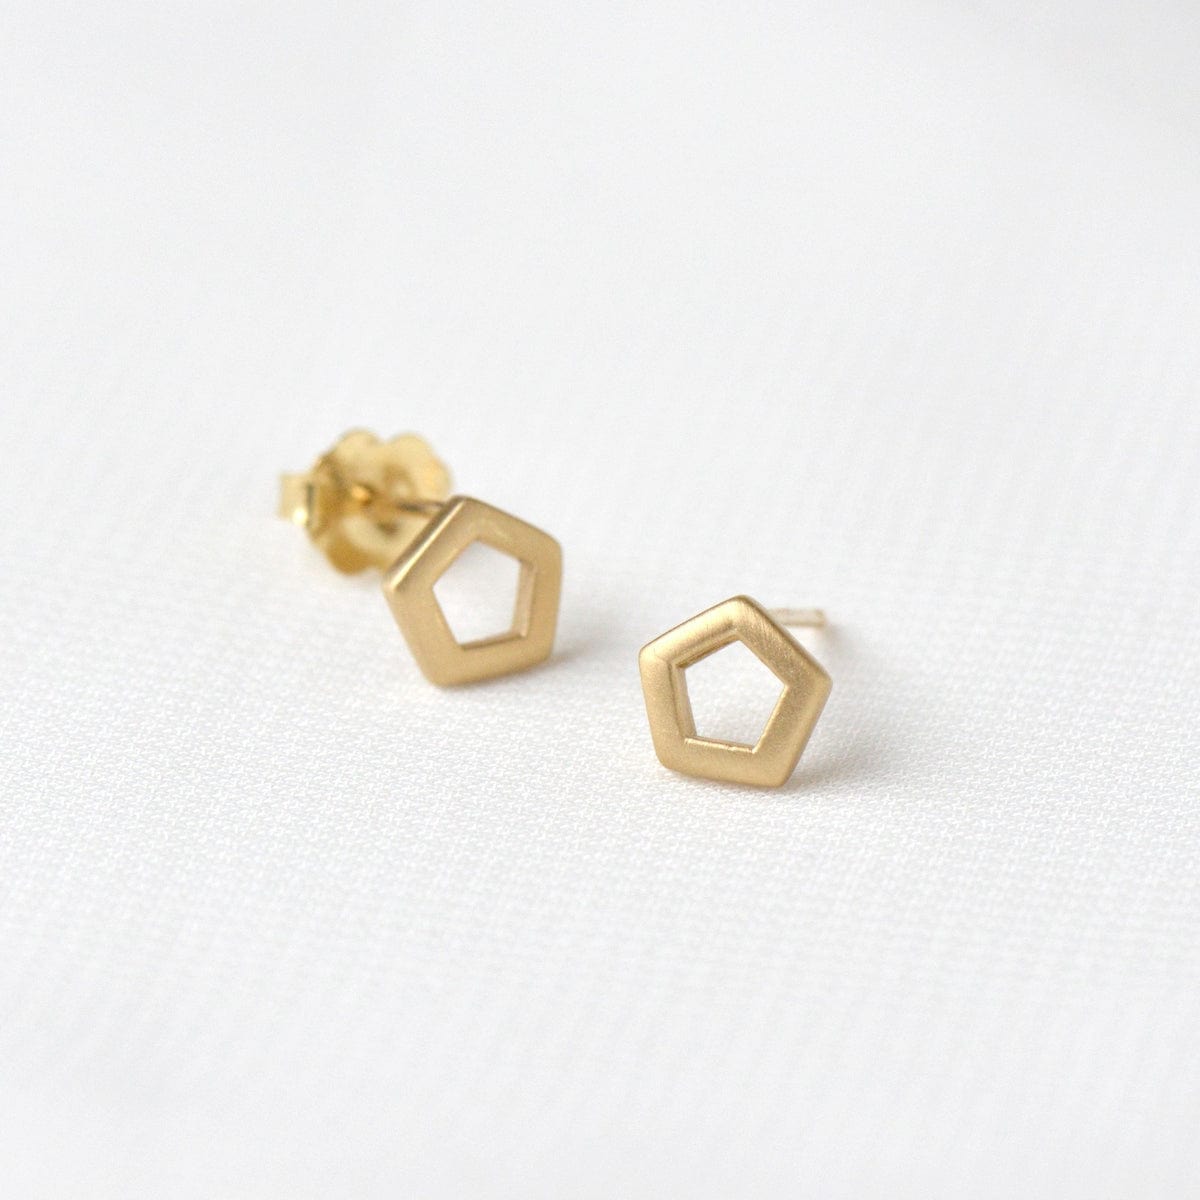 EAR-18K 18k Yellow Gold Pentagonal Stud Earrings